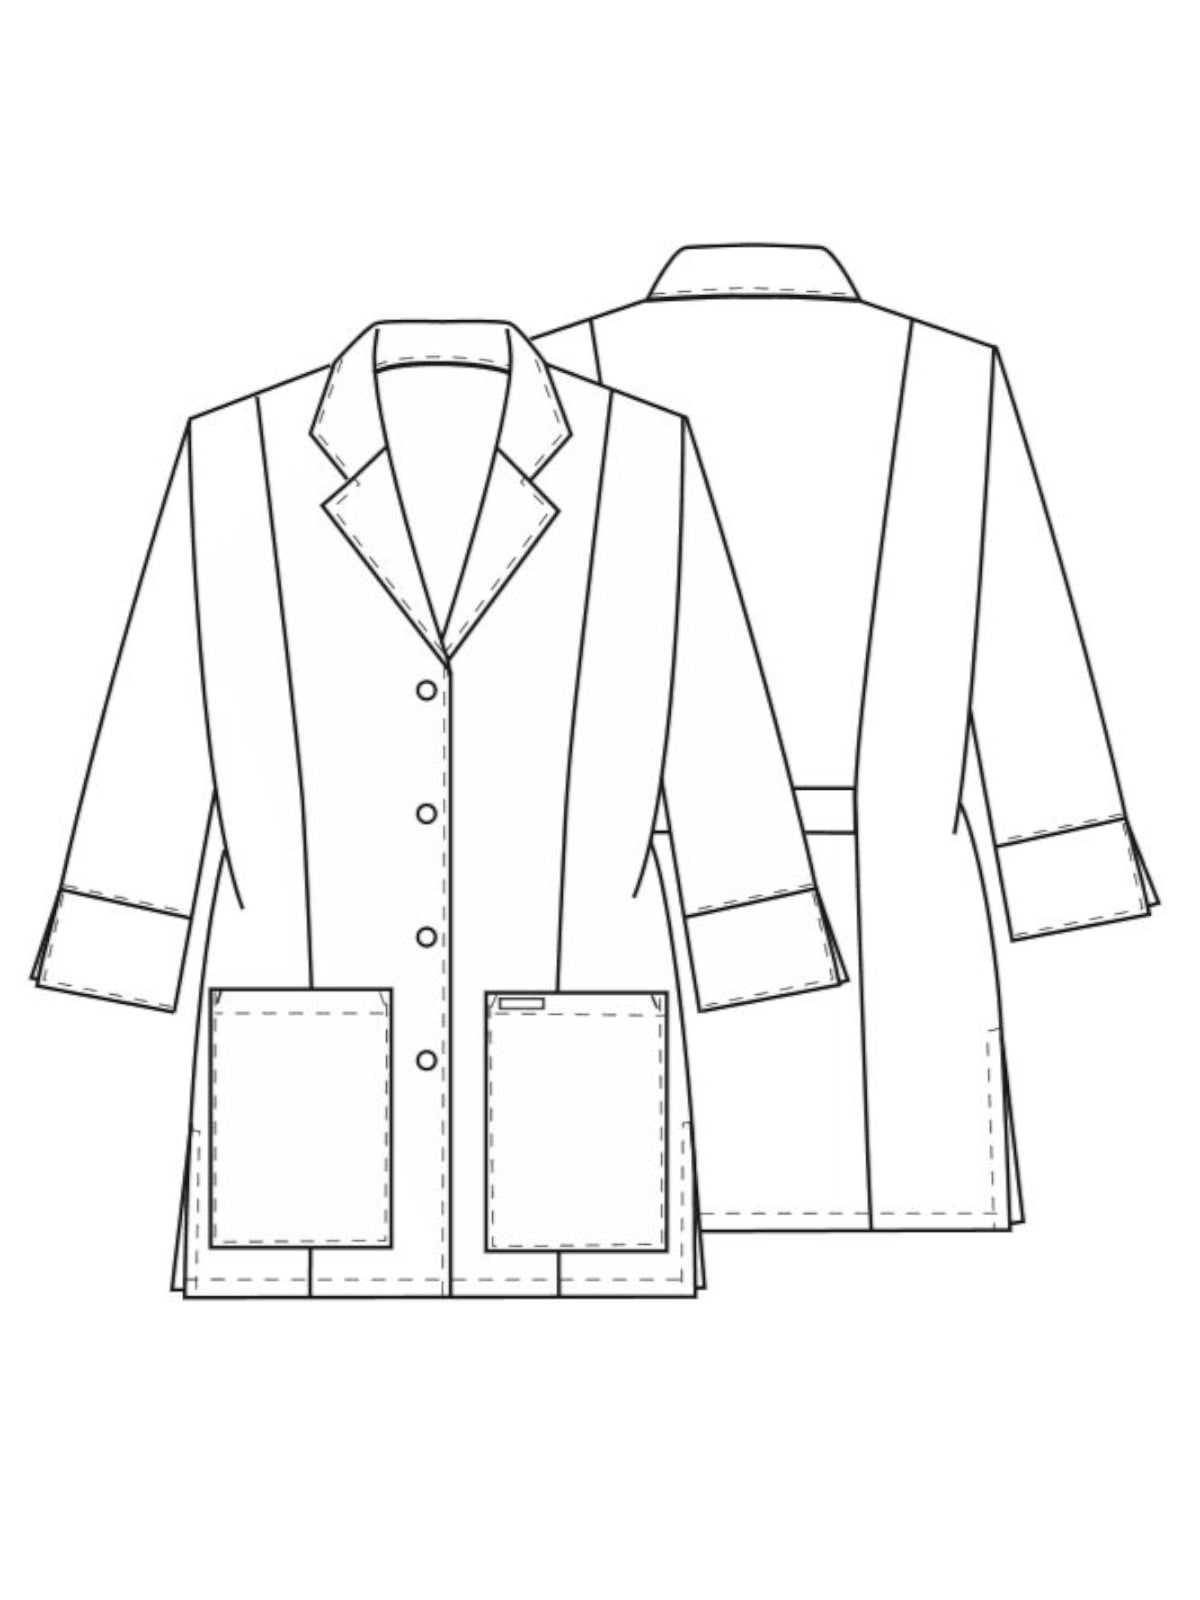 30" 3/4 Sleeve Lab Coat - 1470 - White